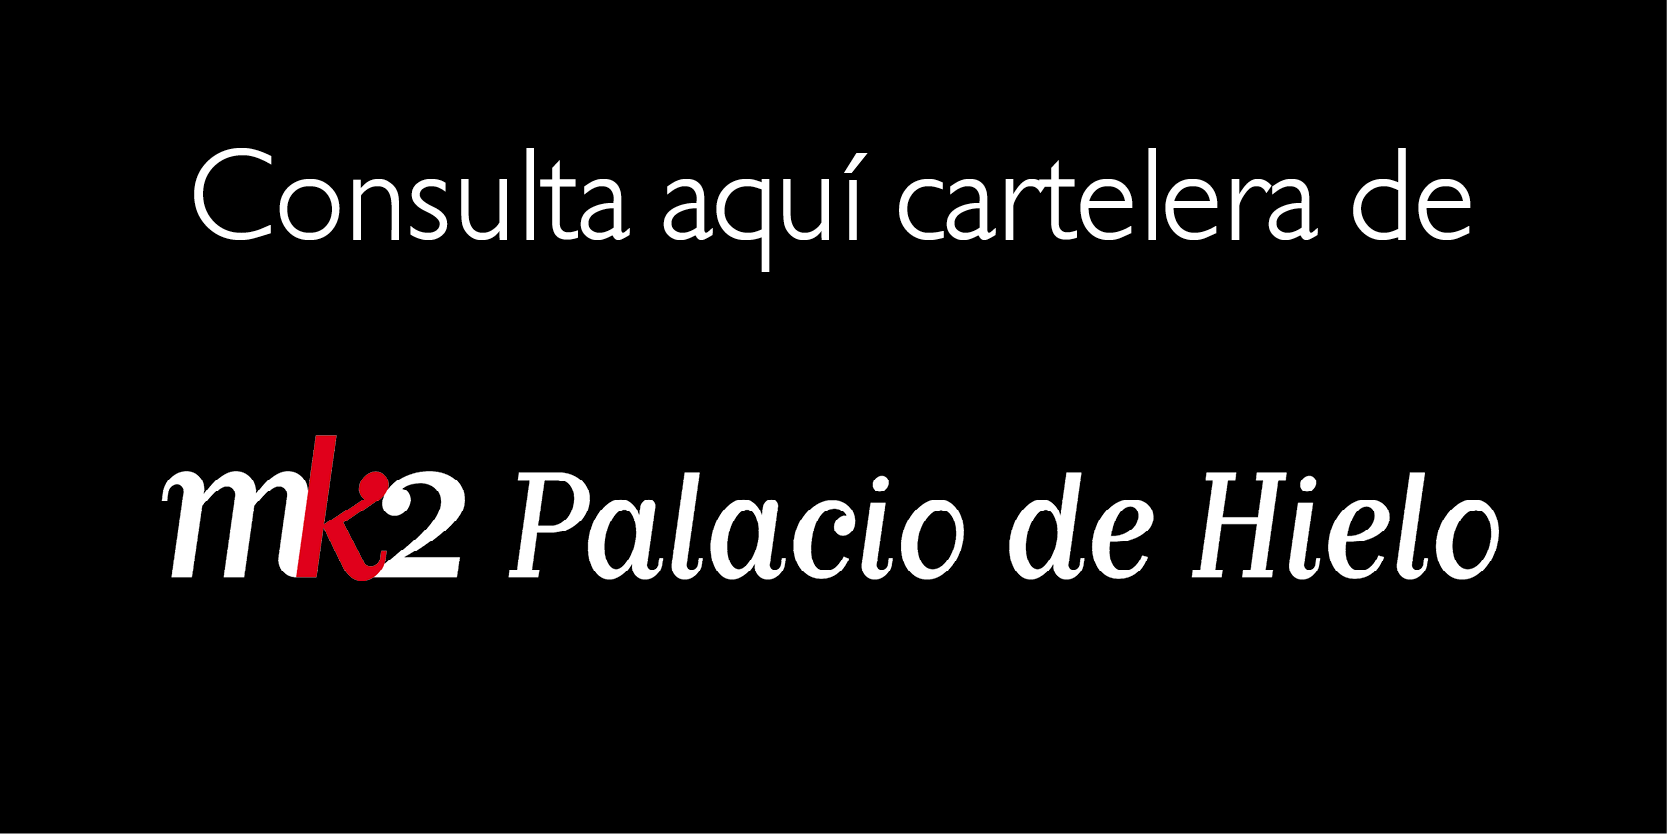 cartelera-palacio-h.png